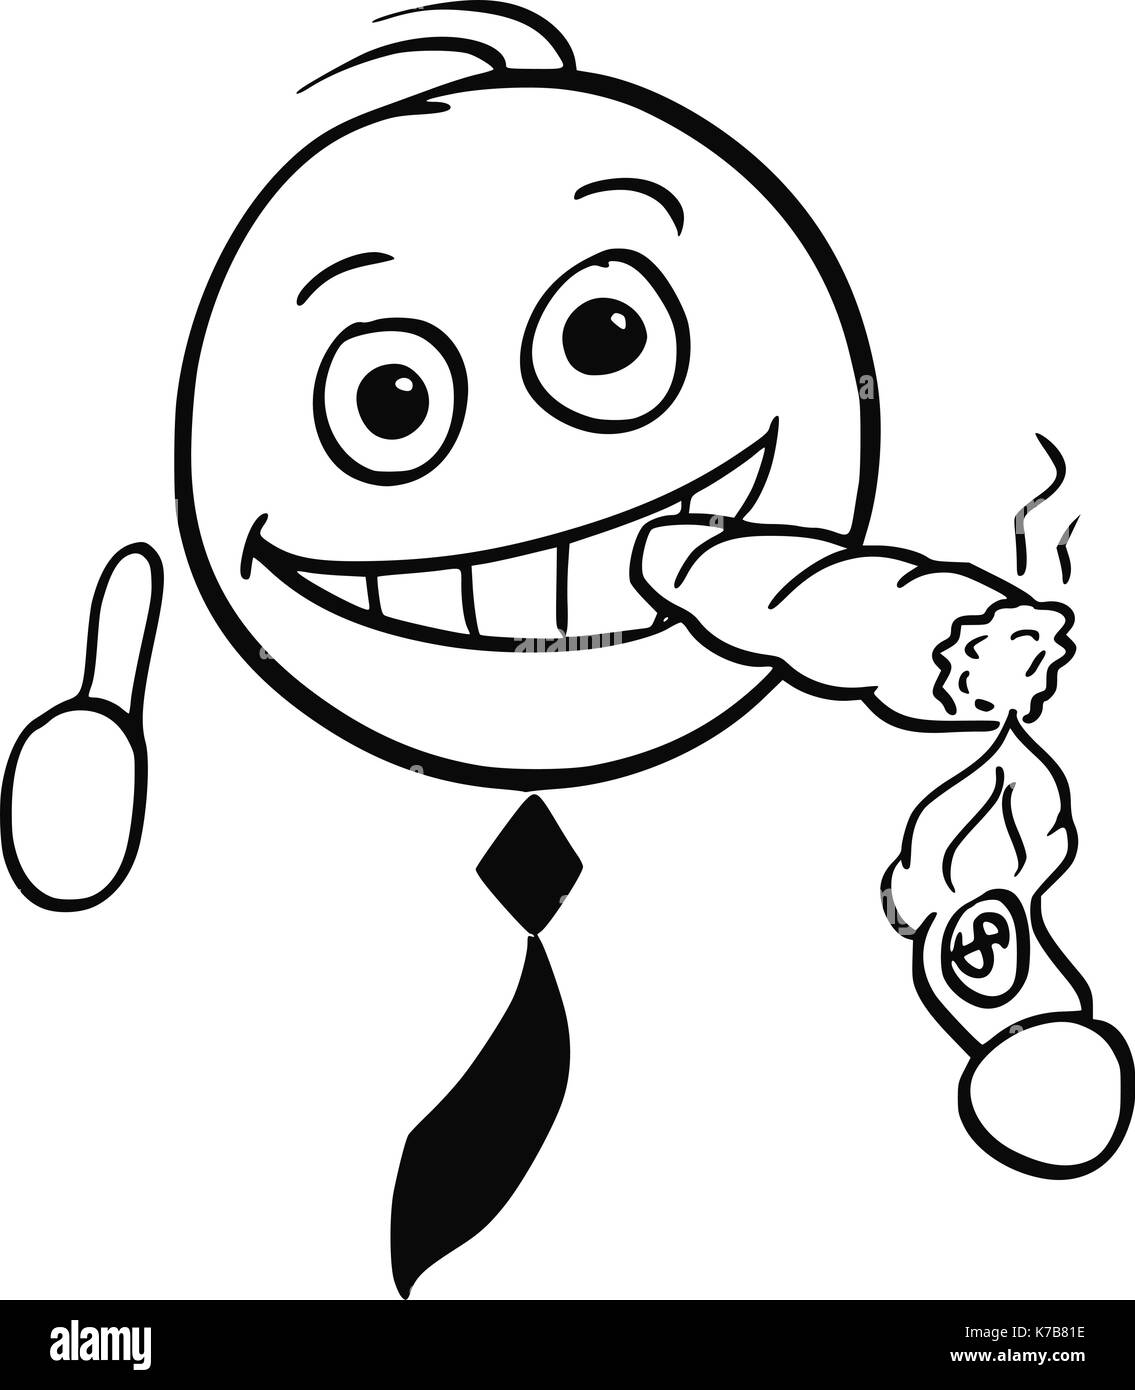 Cartoon stick Mann Abbildung von lächelnden Business mann Geschäftsmann Blitz grossen Zigarre mit Banknote. Stock Vektor